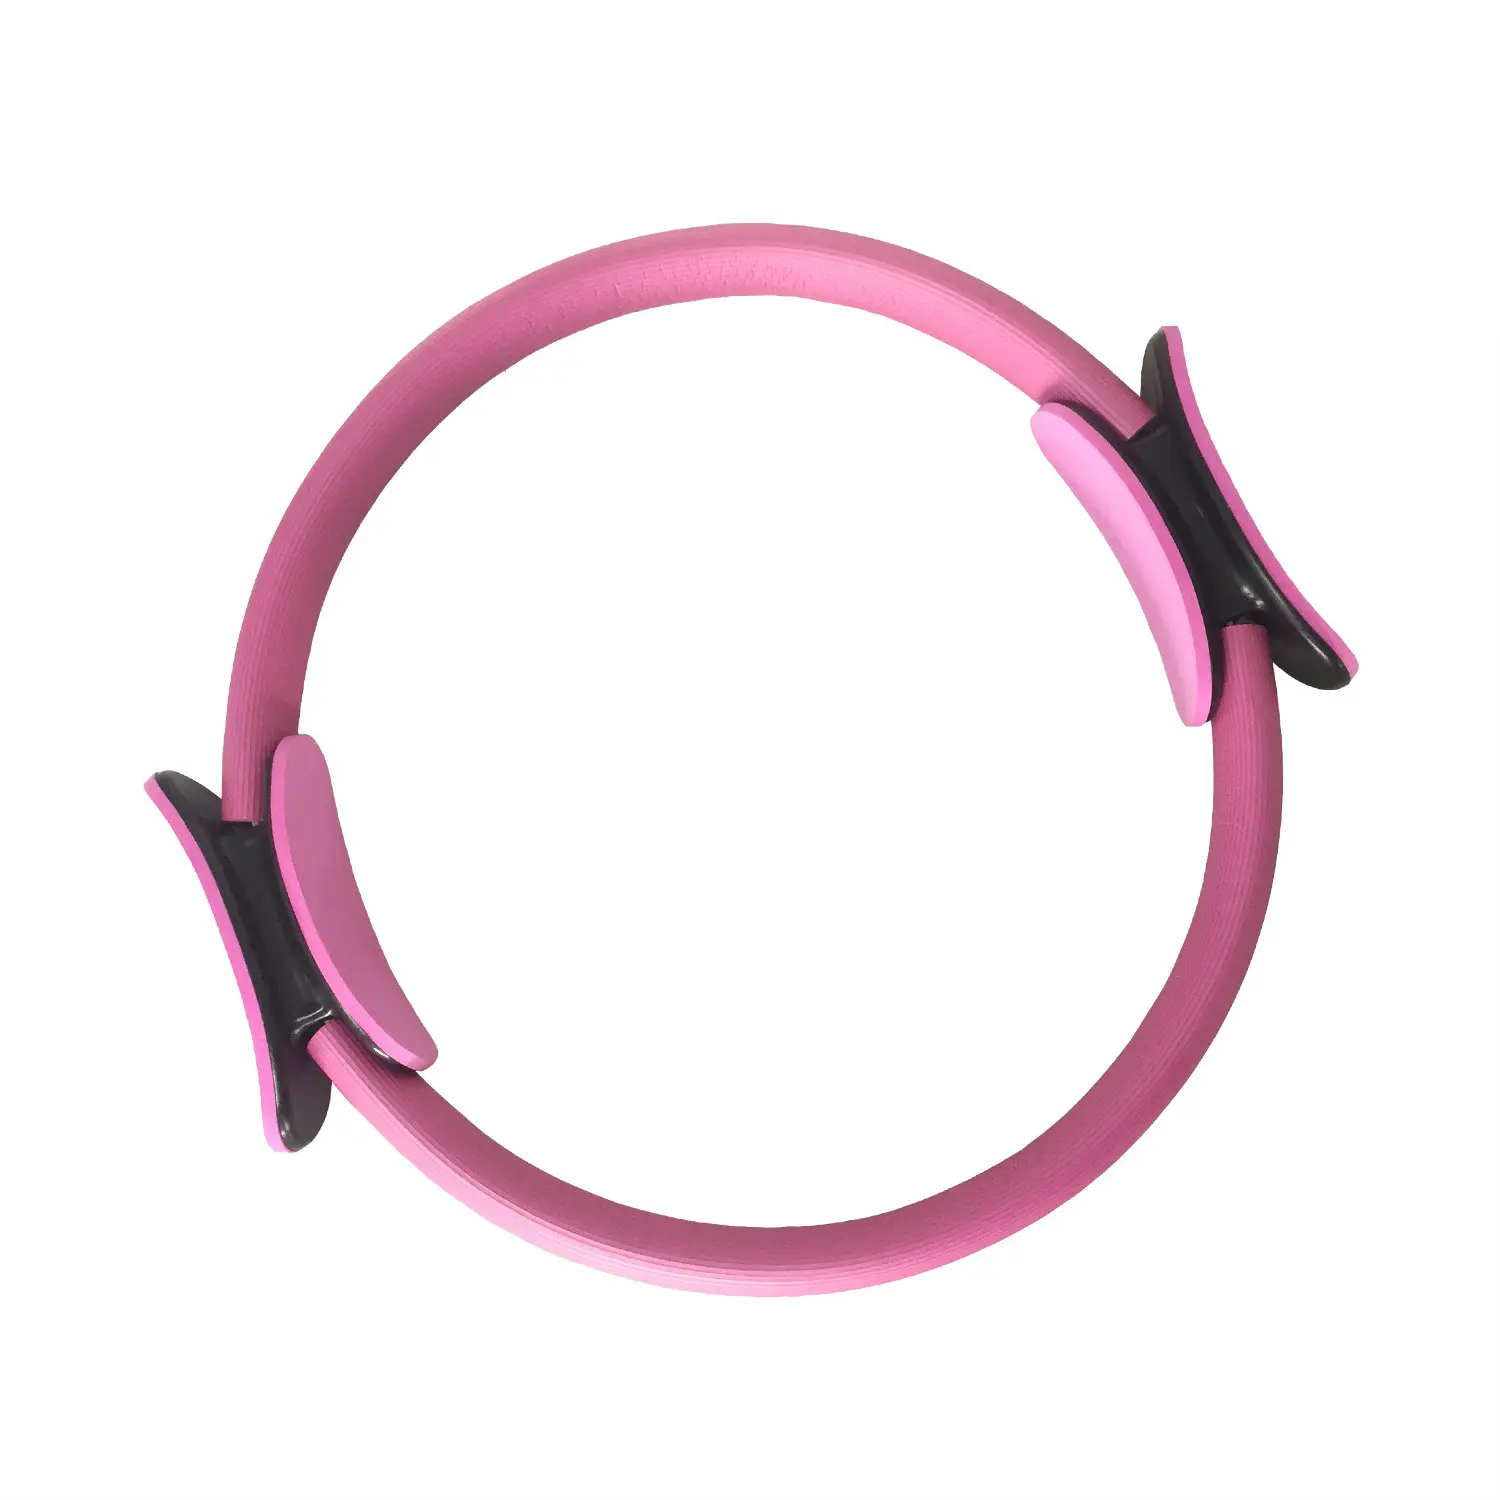 Ультра-Fit круг волшебный Круг Йога Пилатес кольцо завод Фитнес Тренажеры для ног прочный и популярный инструмент для домашних тренировок